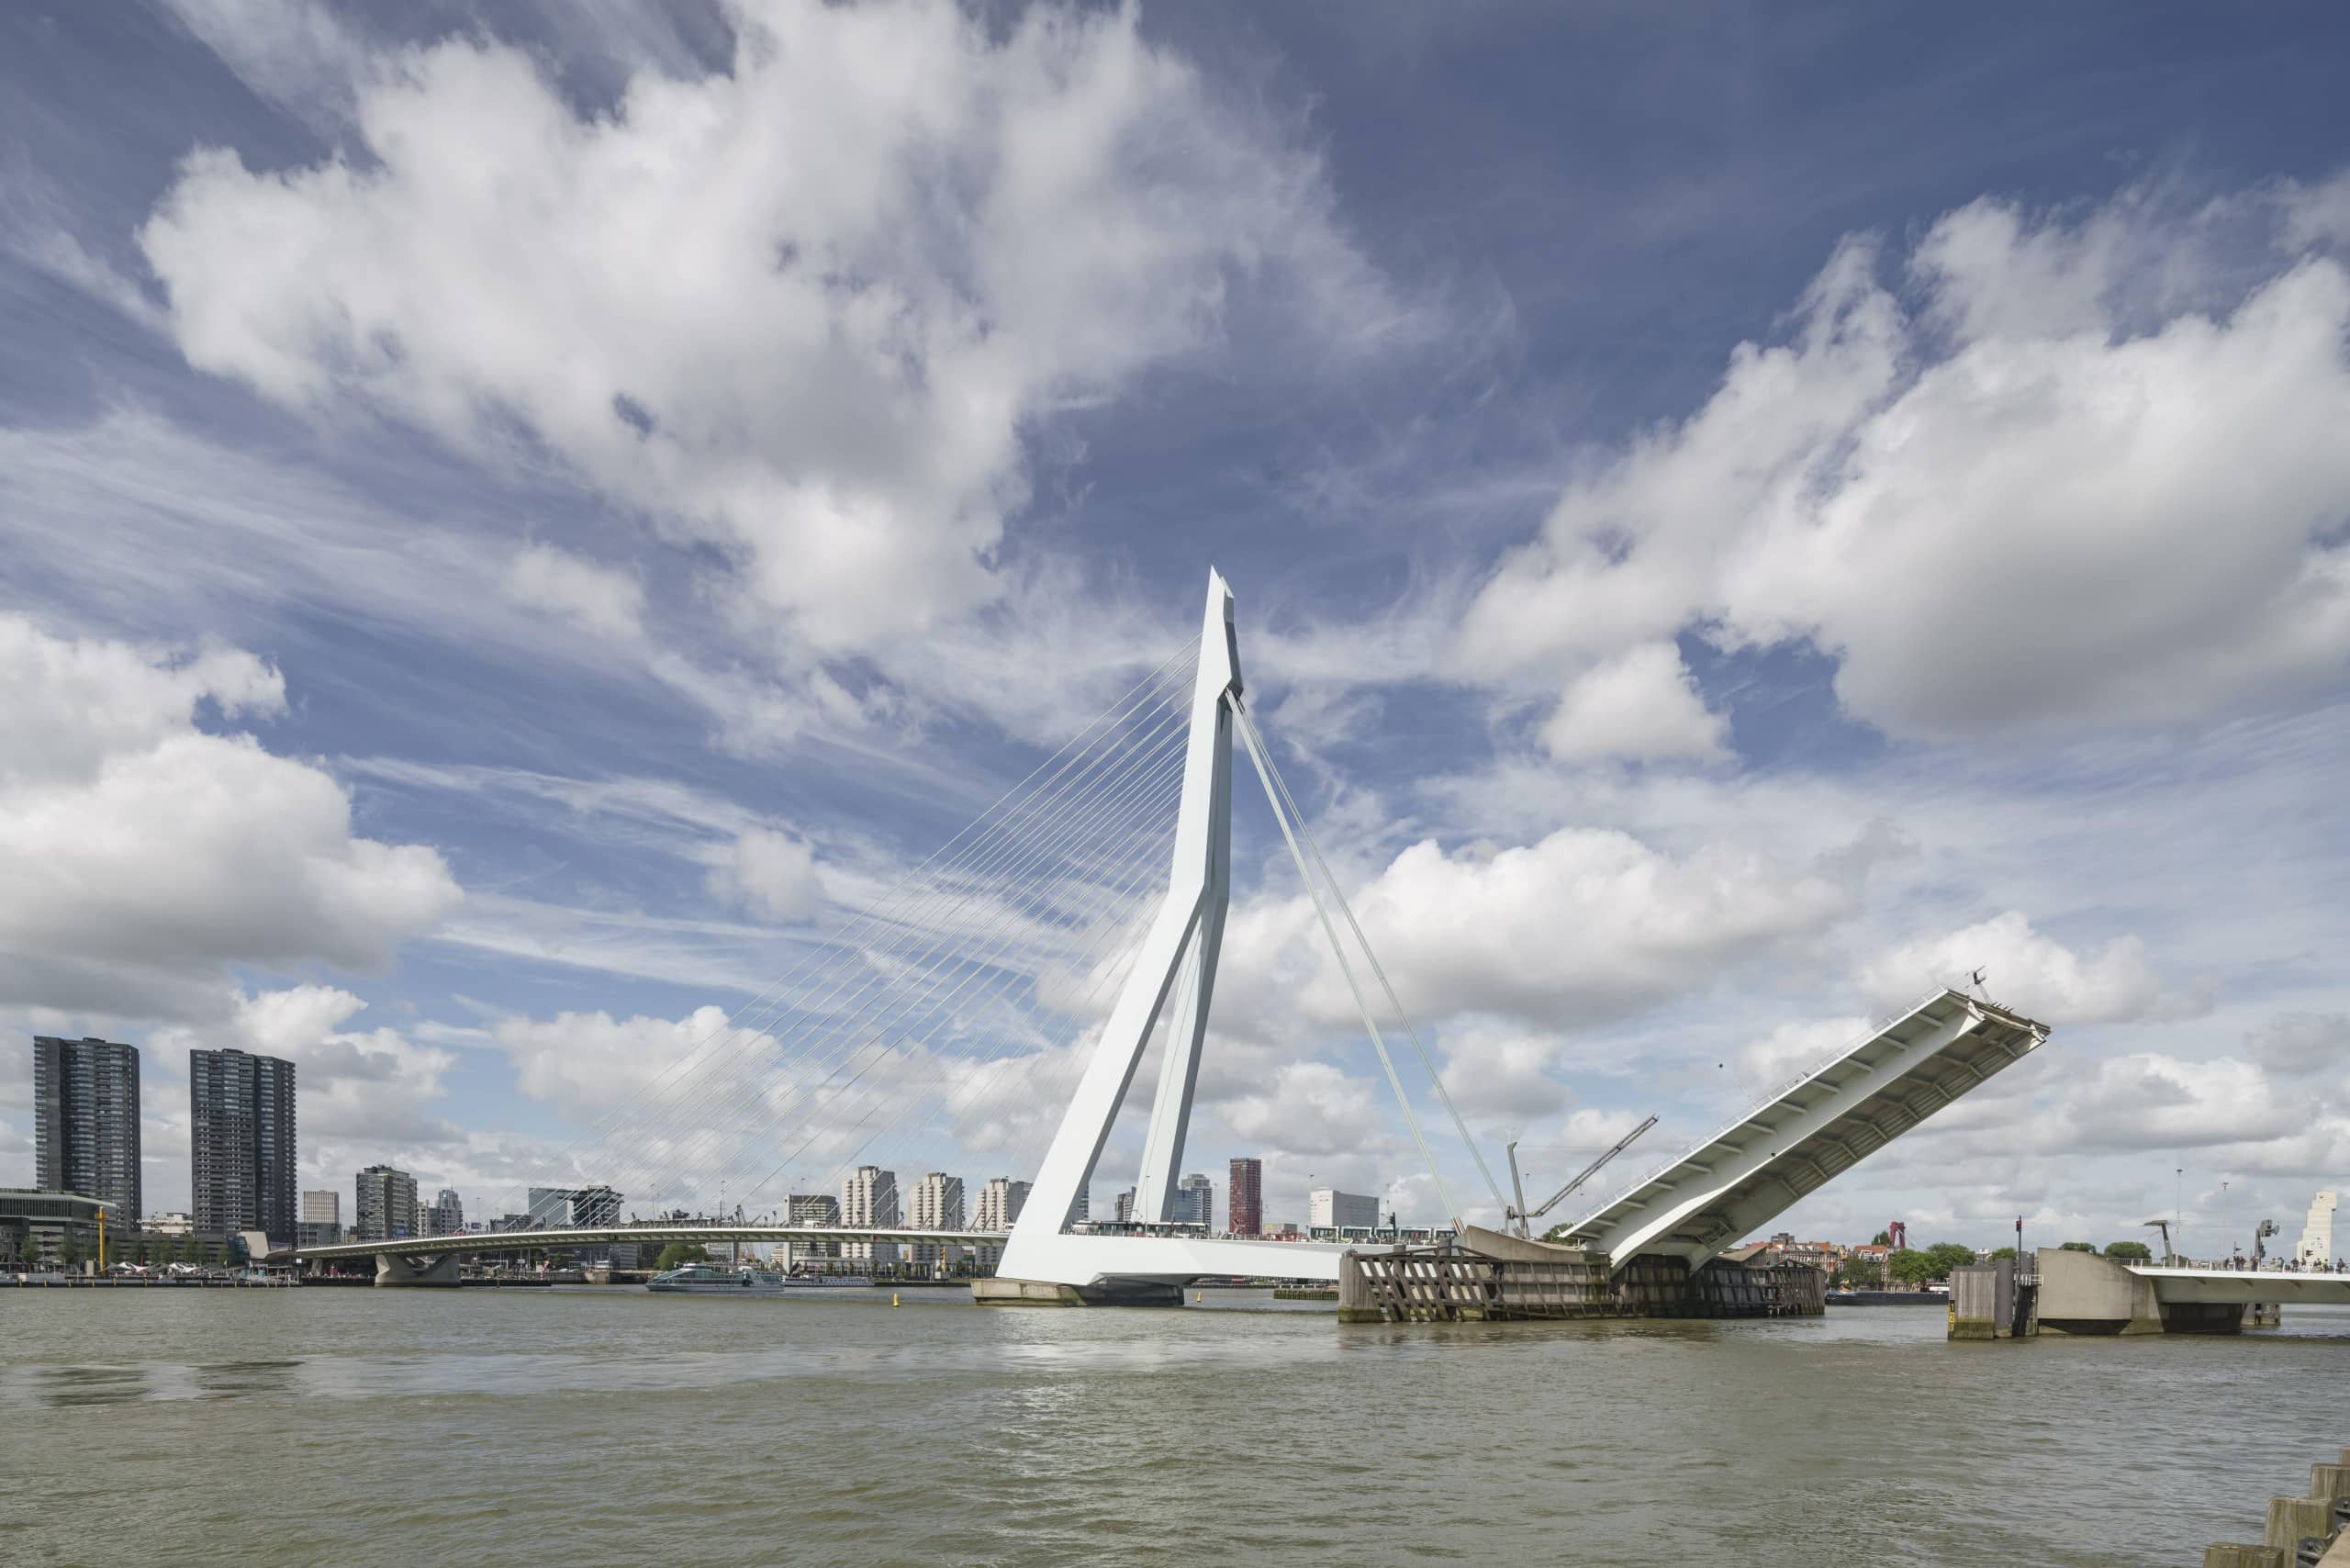 Die Erasmusbrücke ist das Wahrzeichen Rotterdams. Foto: ©Ronald Tilleman